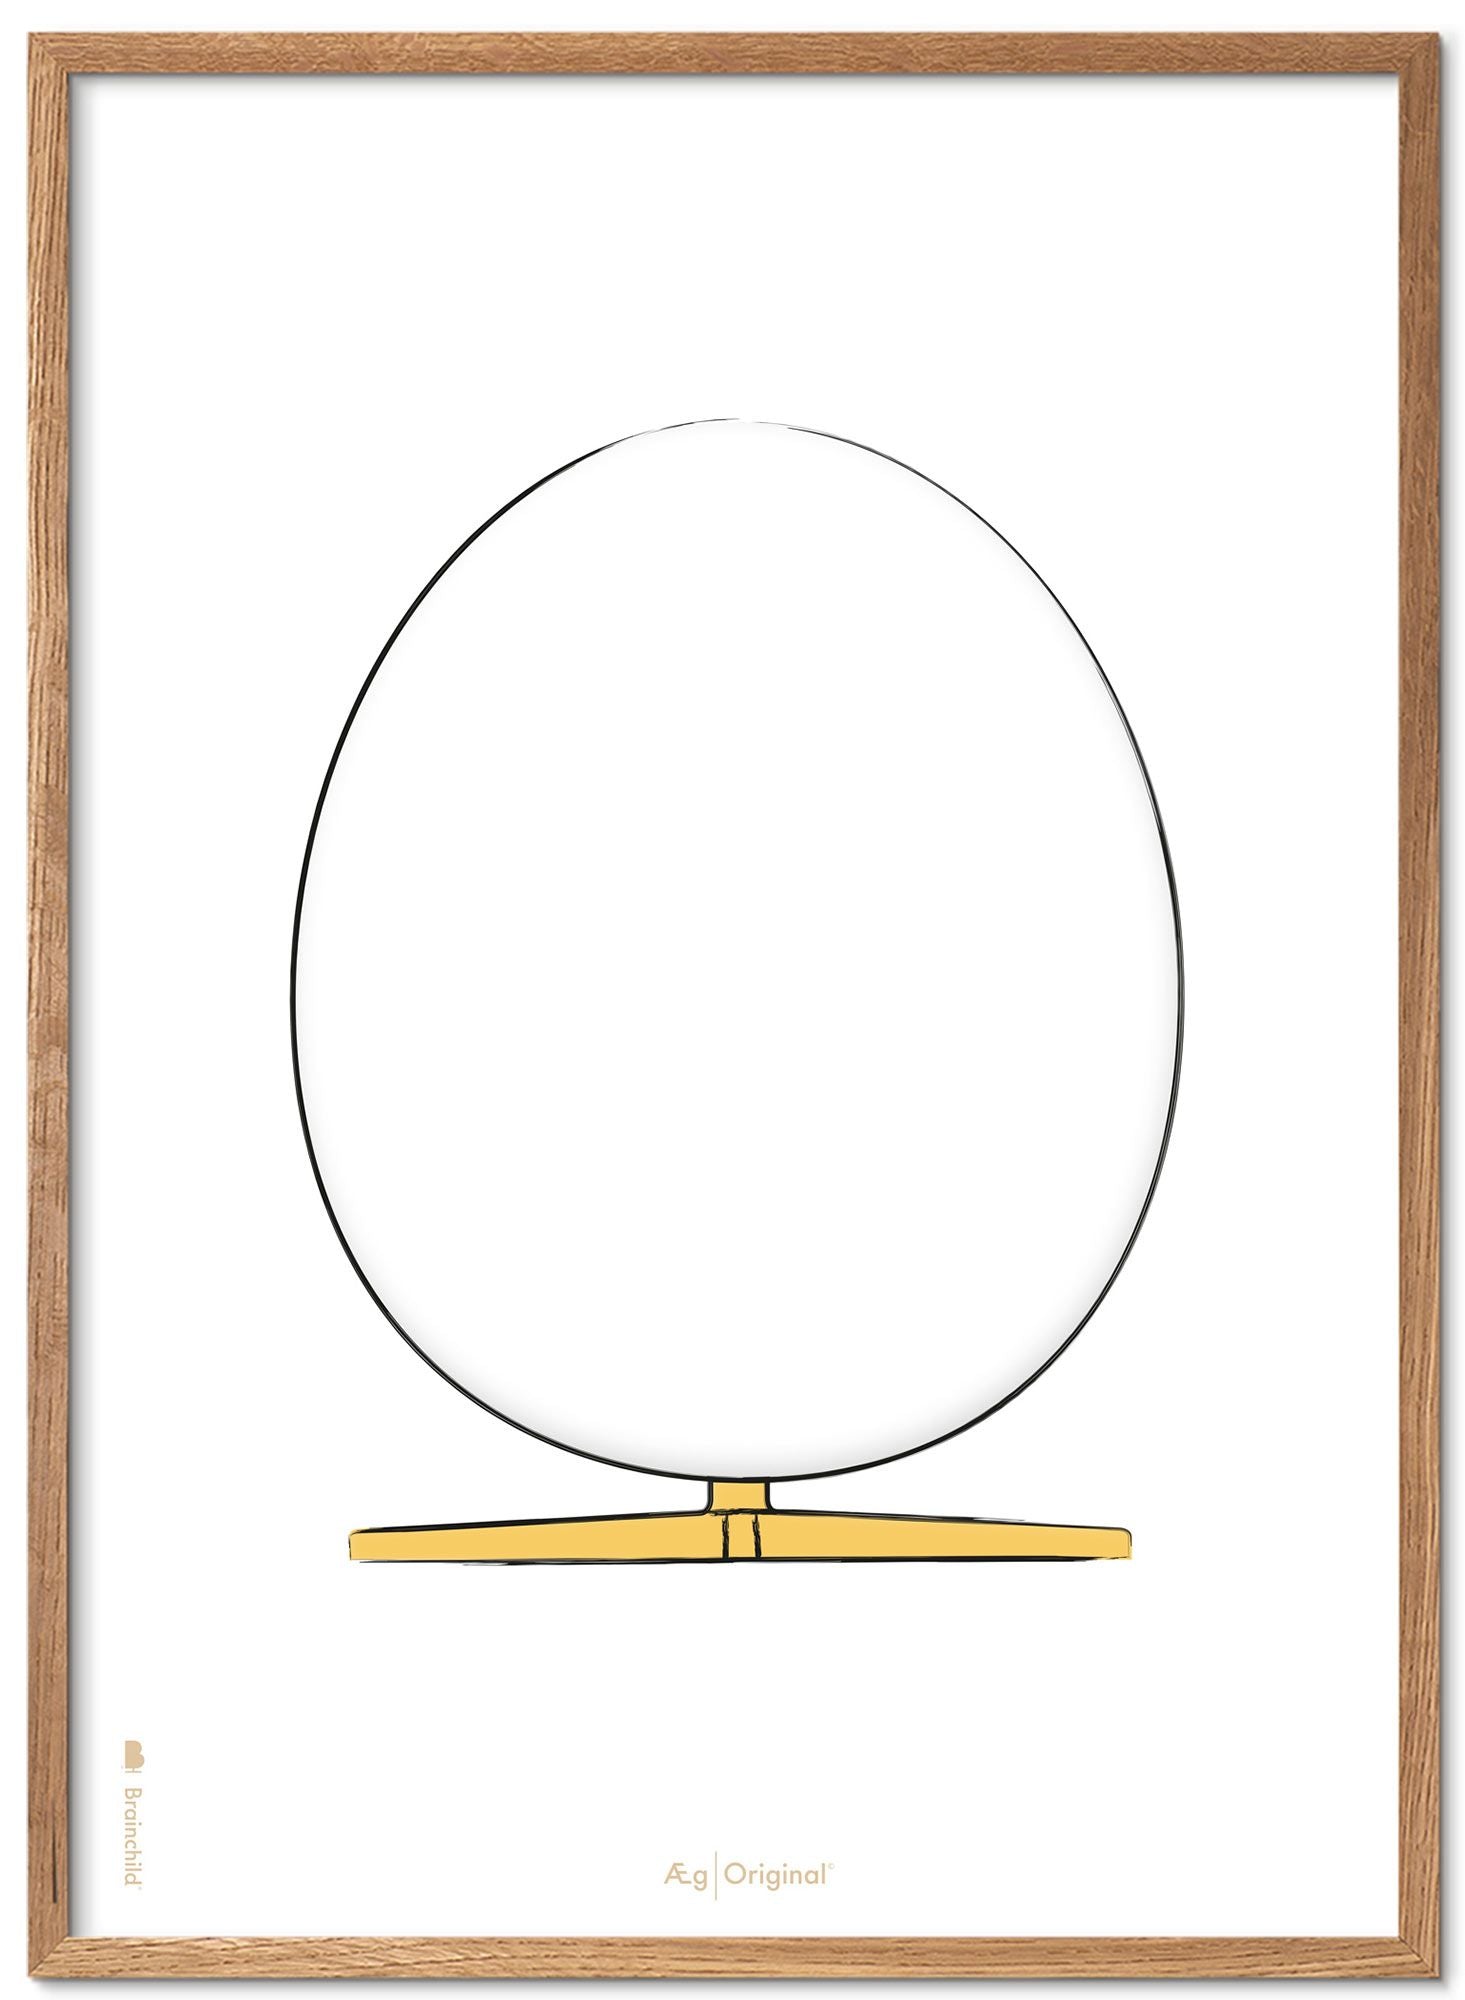 Prepare el póster de boceto de diseño de huevo con marco hecho de madera clara A5, fondo blanco